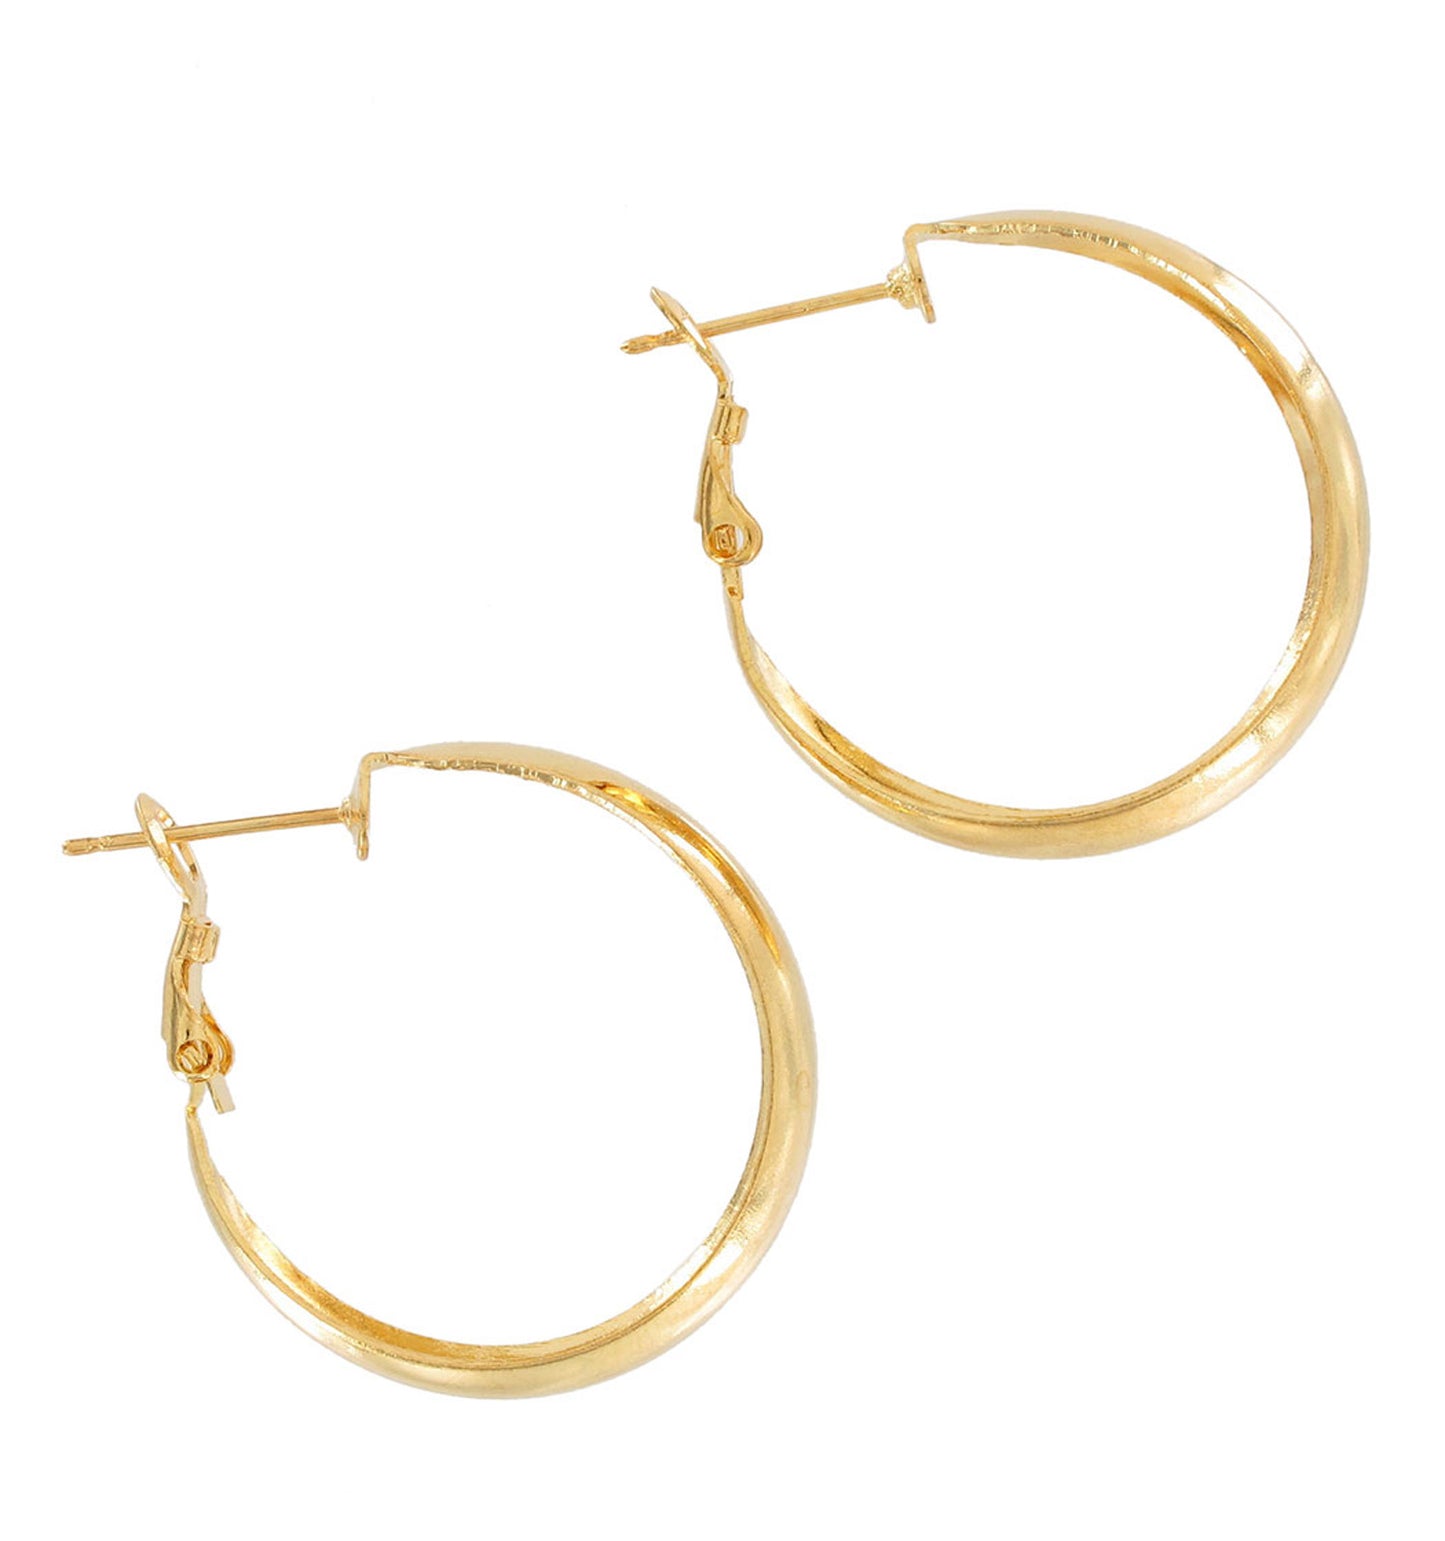 Gold Tone Lightweight Round Wide Hoop Pierced Earrings 1 1/8"